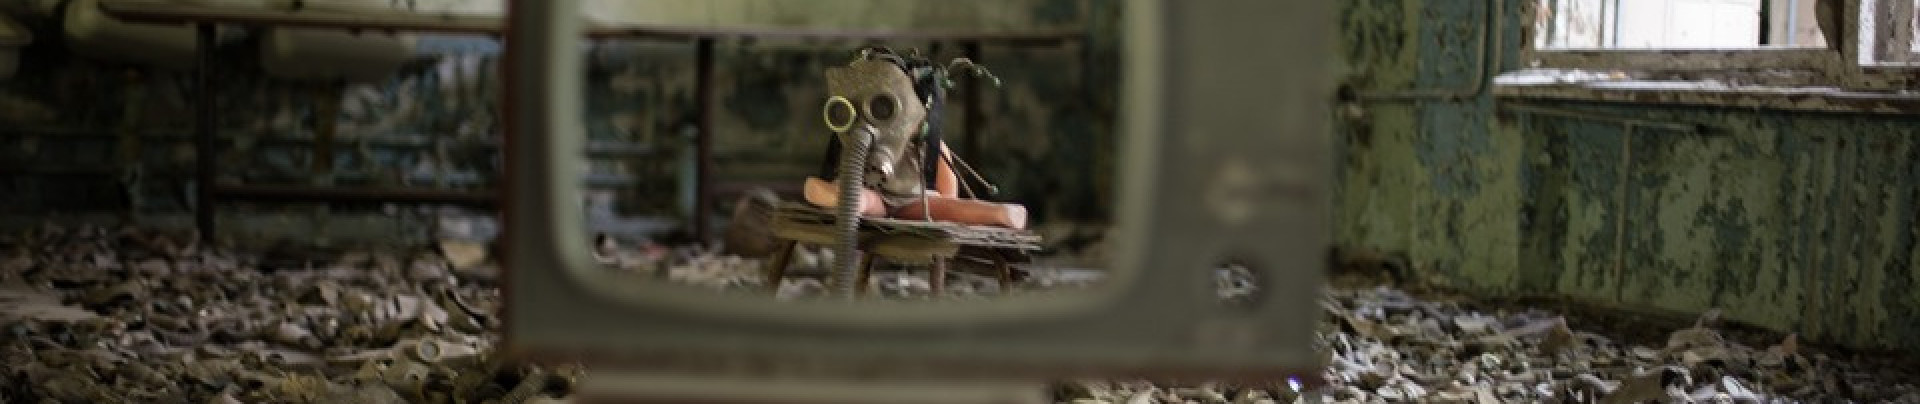 Černobyl - socialistické peklo plné tajemství